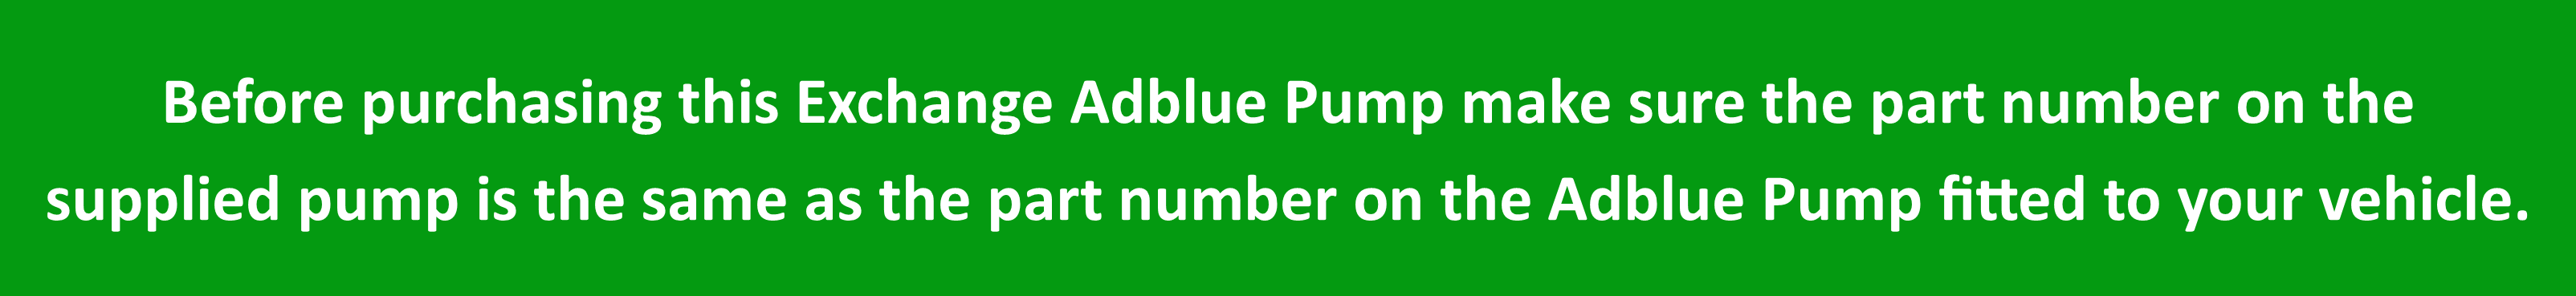 v1 green banner adblue pump